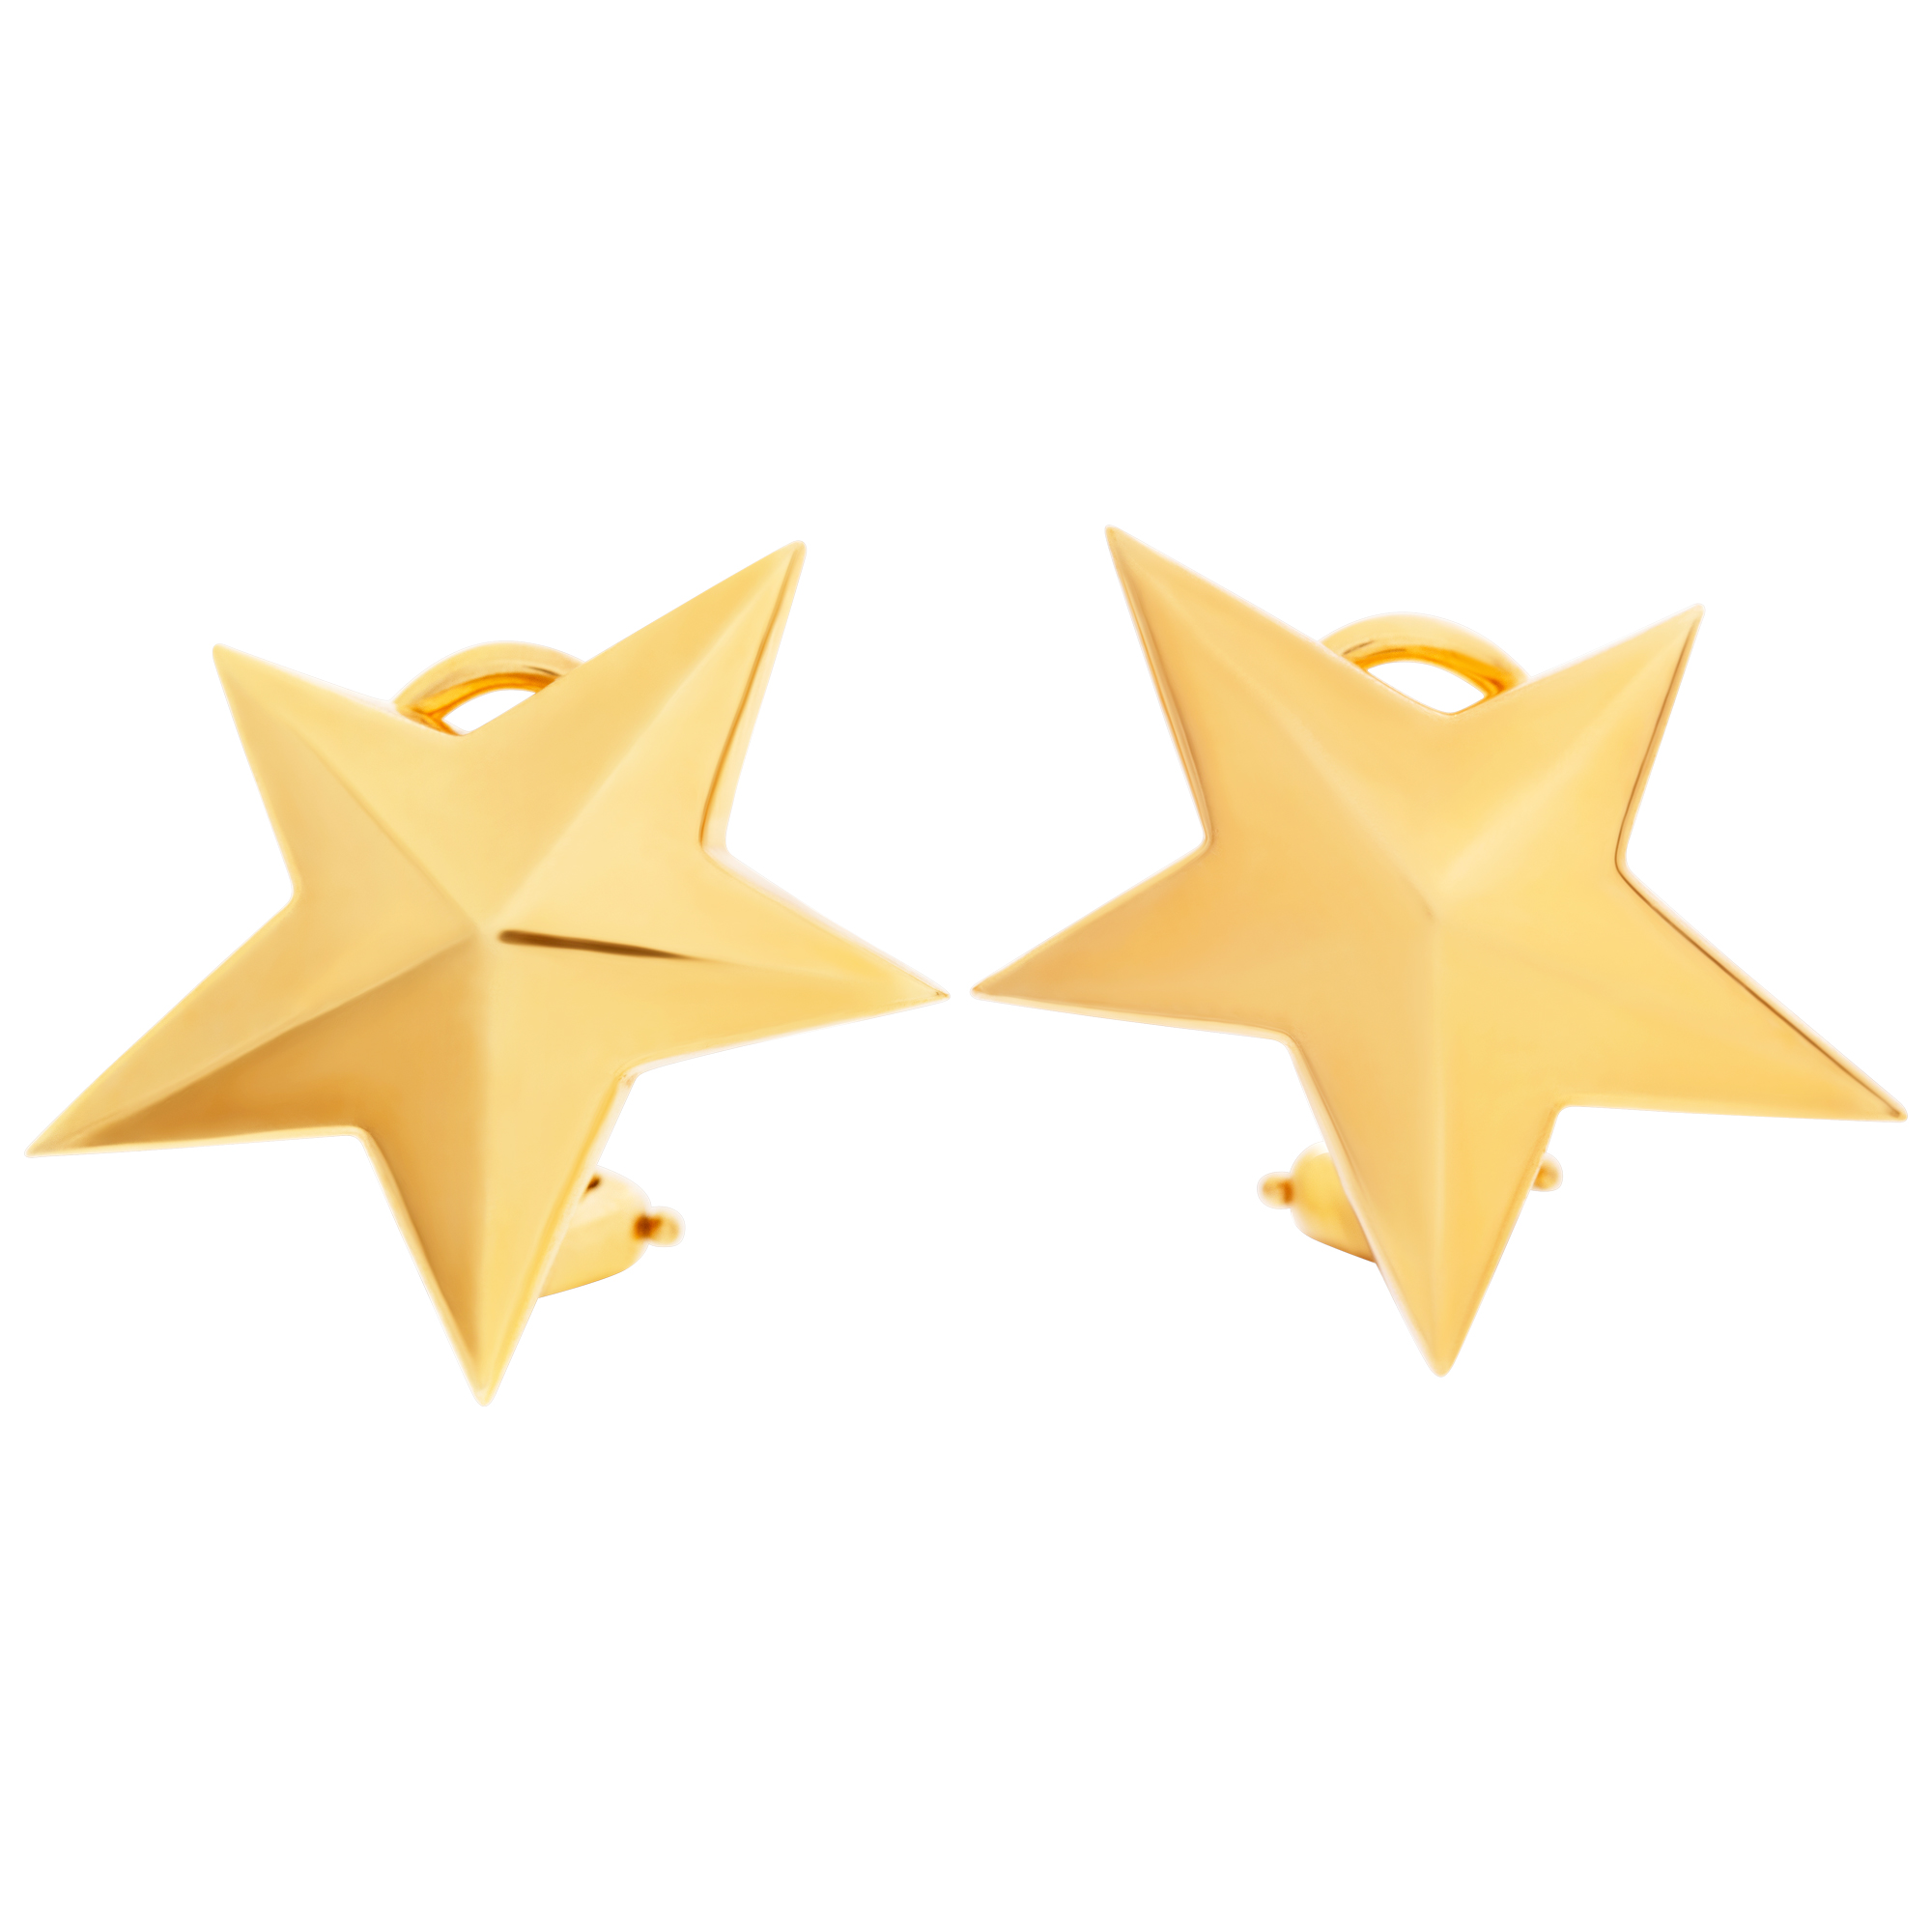 Tiffany & Co. Star Earrings in 18k yellow gold 20mm x 24mm